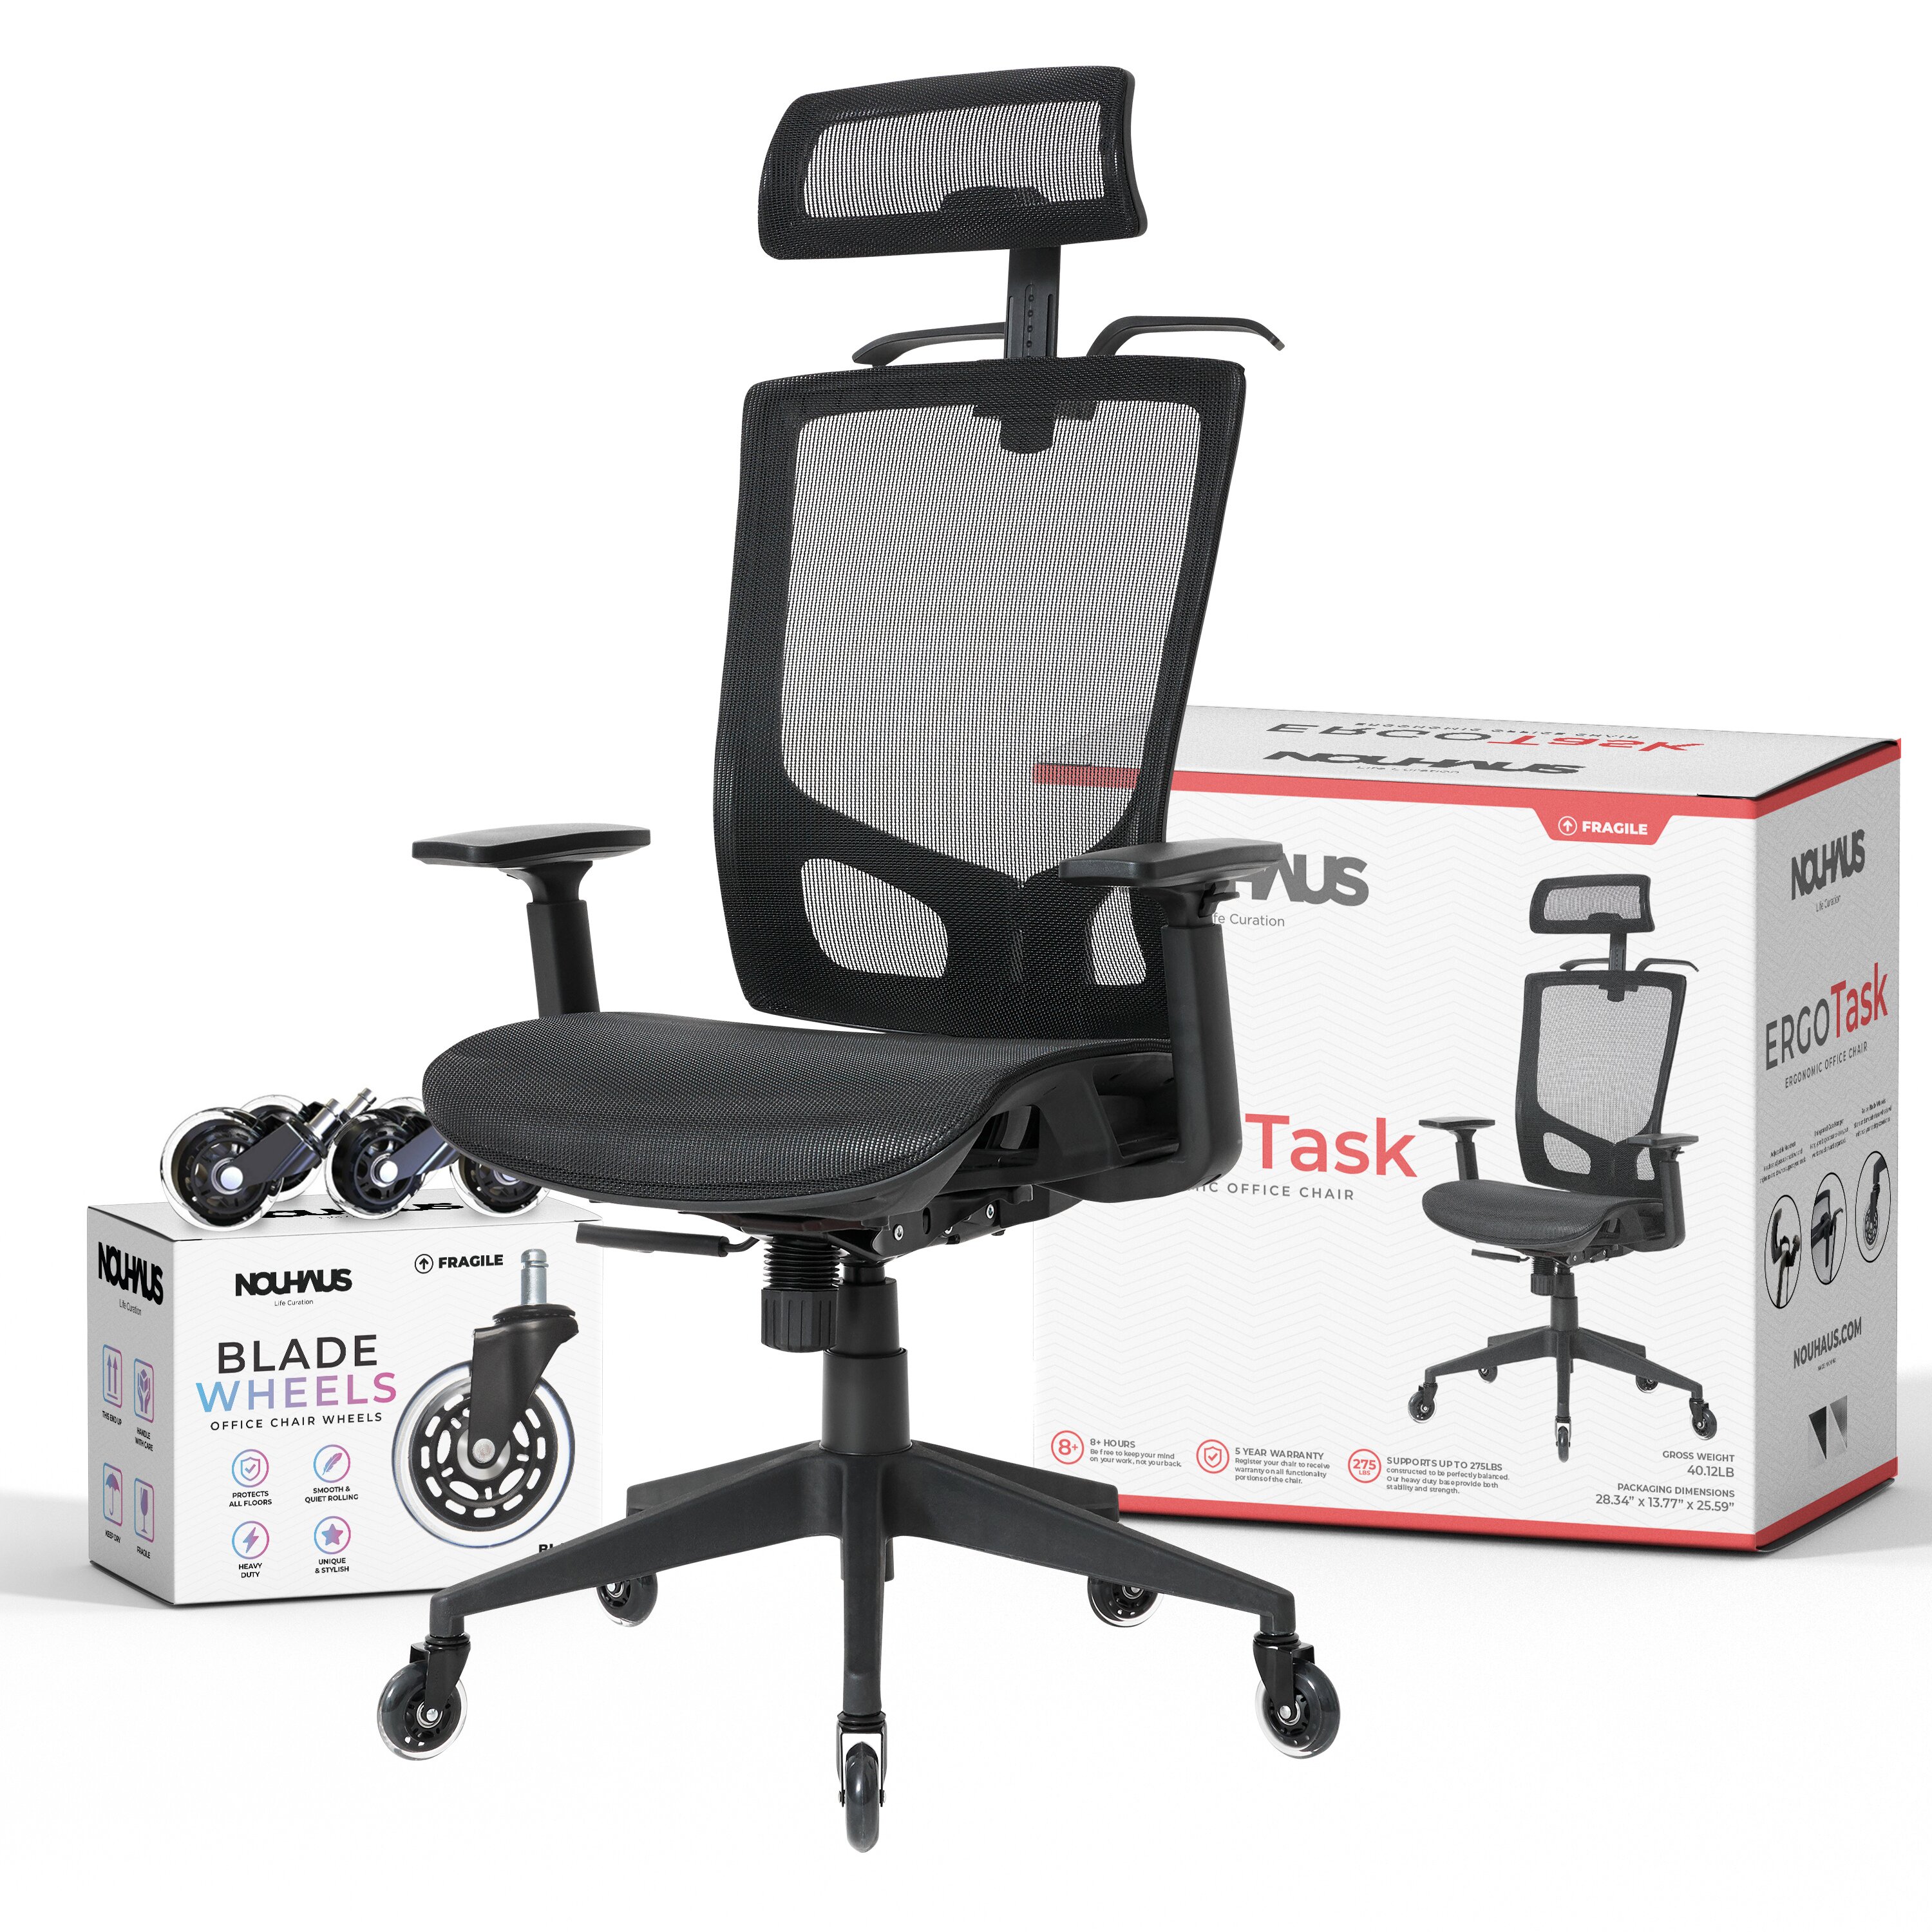 https://assets.wfcdn.com/im/5695910/compr-r85/1495/149507929/ergotask-task-chair-with-headrest.jpg